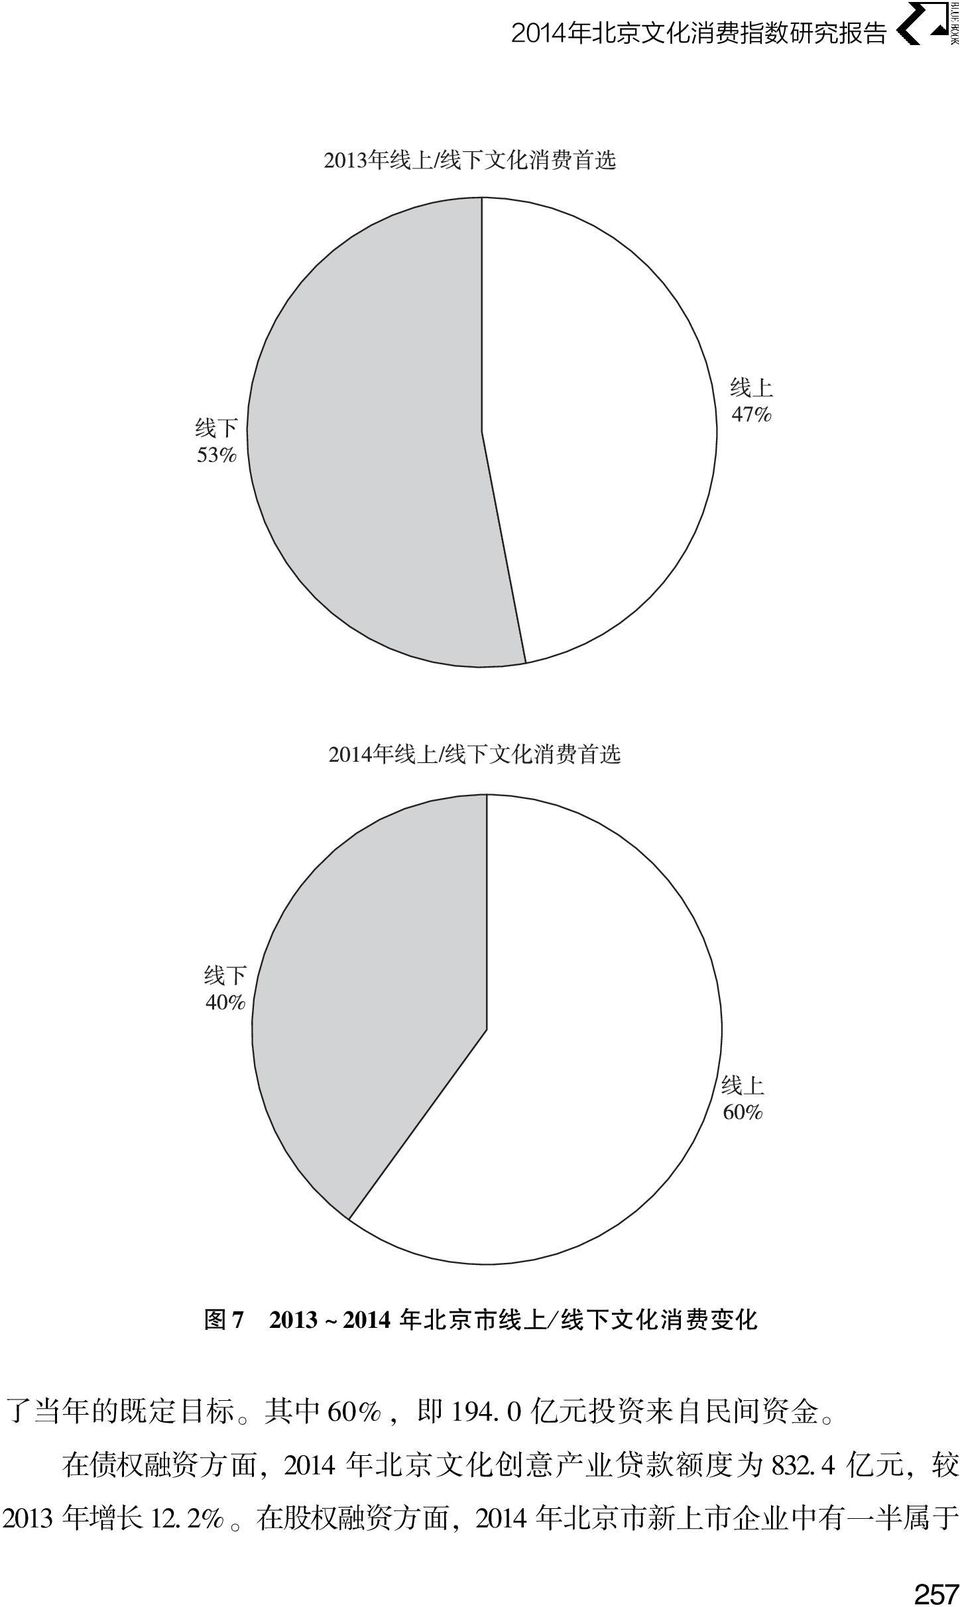 在 债 权 融 资 方 面, 2014 年 北 京 文 化 创 意 产 业 贷 款 额 度 为 832 4 亿 元, 较 2013